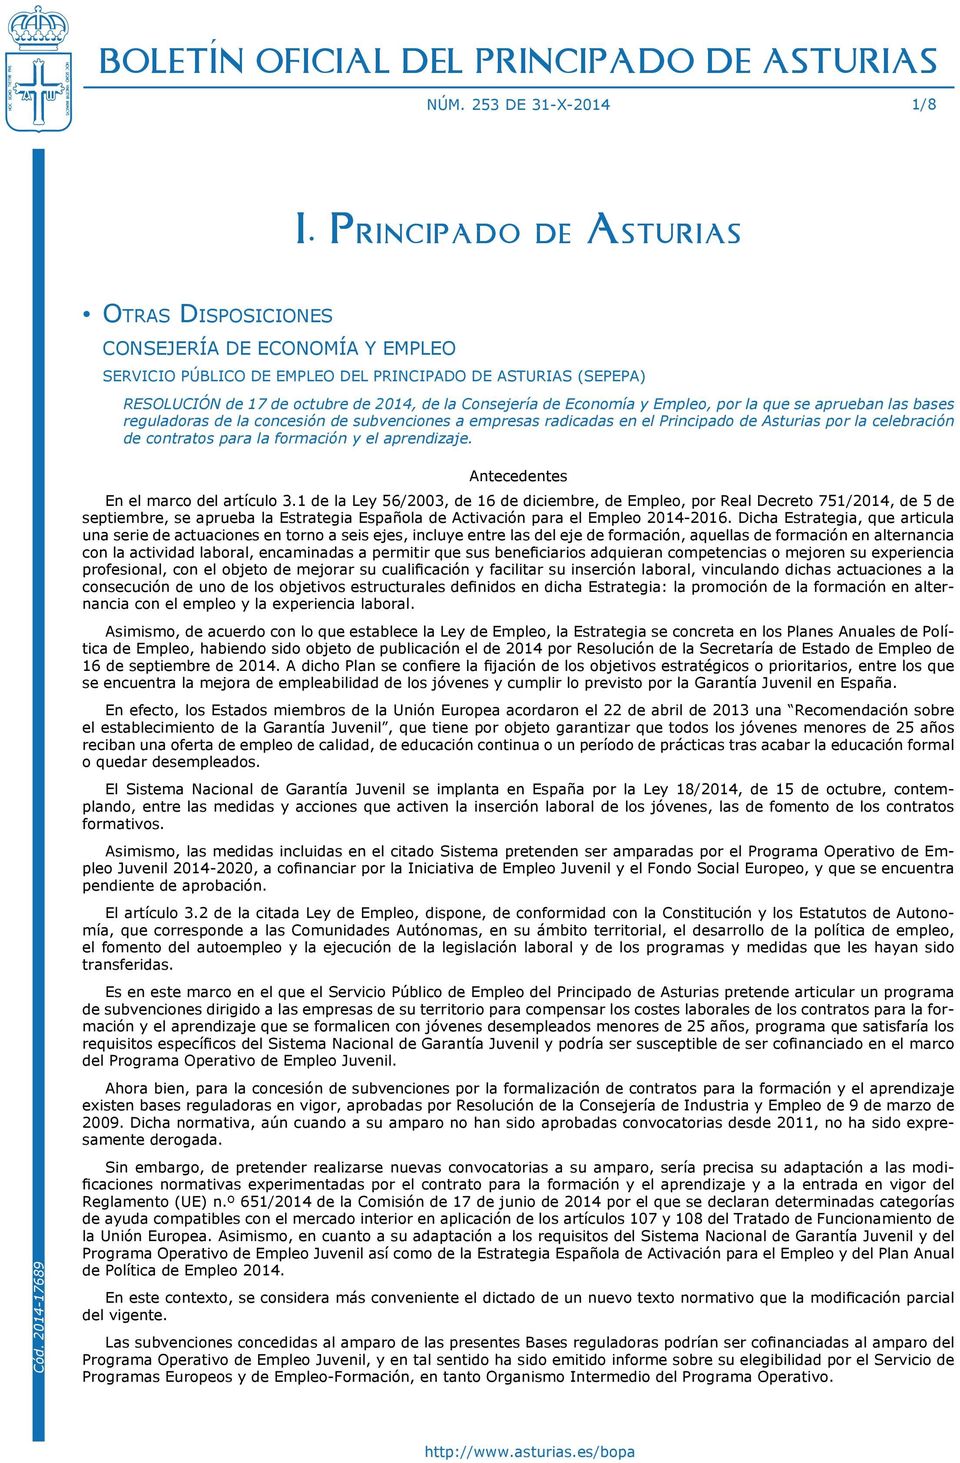 Economía y Empleo, por la que se aprueban las bases reguladoras de la concesión de subvenciones a empresas radicadas en el Principado de Asturias por la celebración de contratos para la formación y